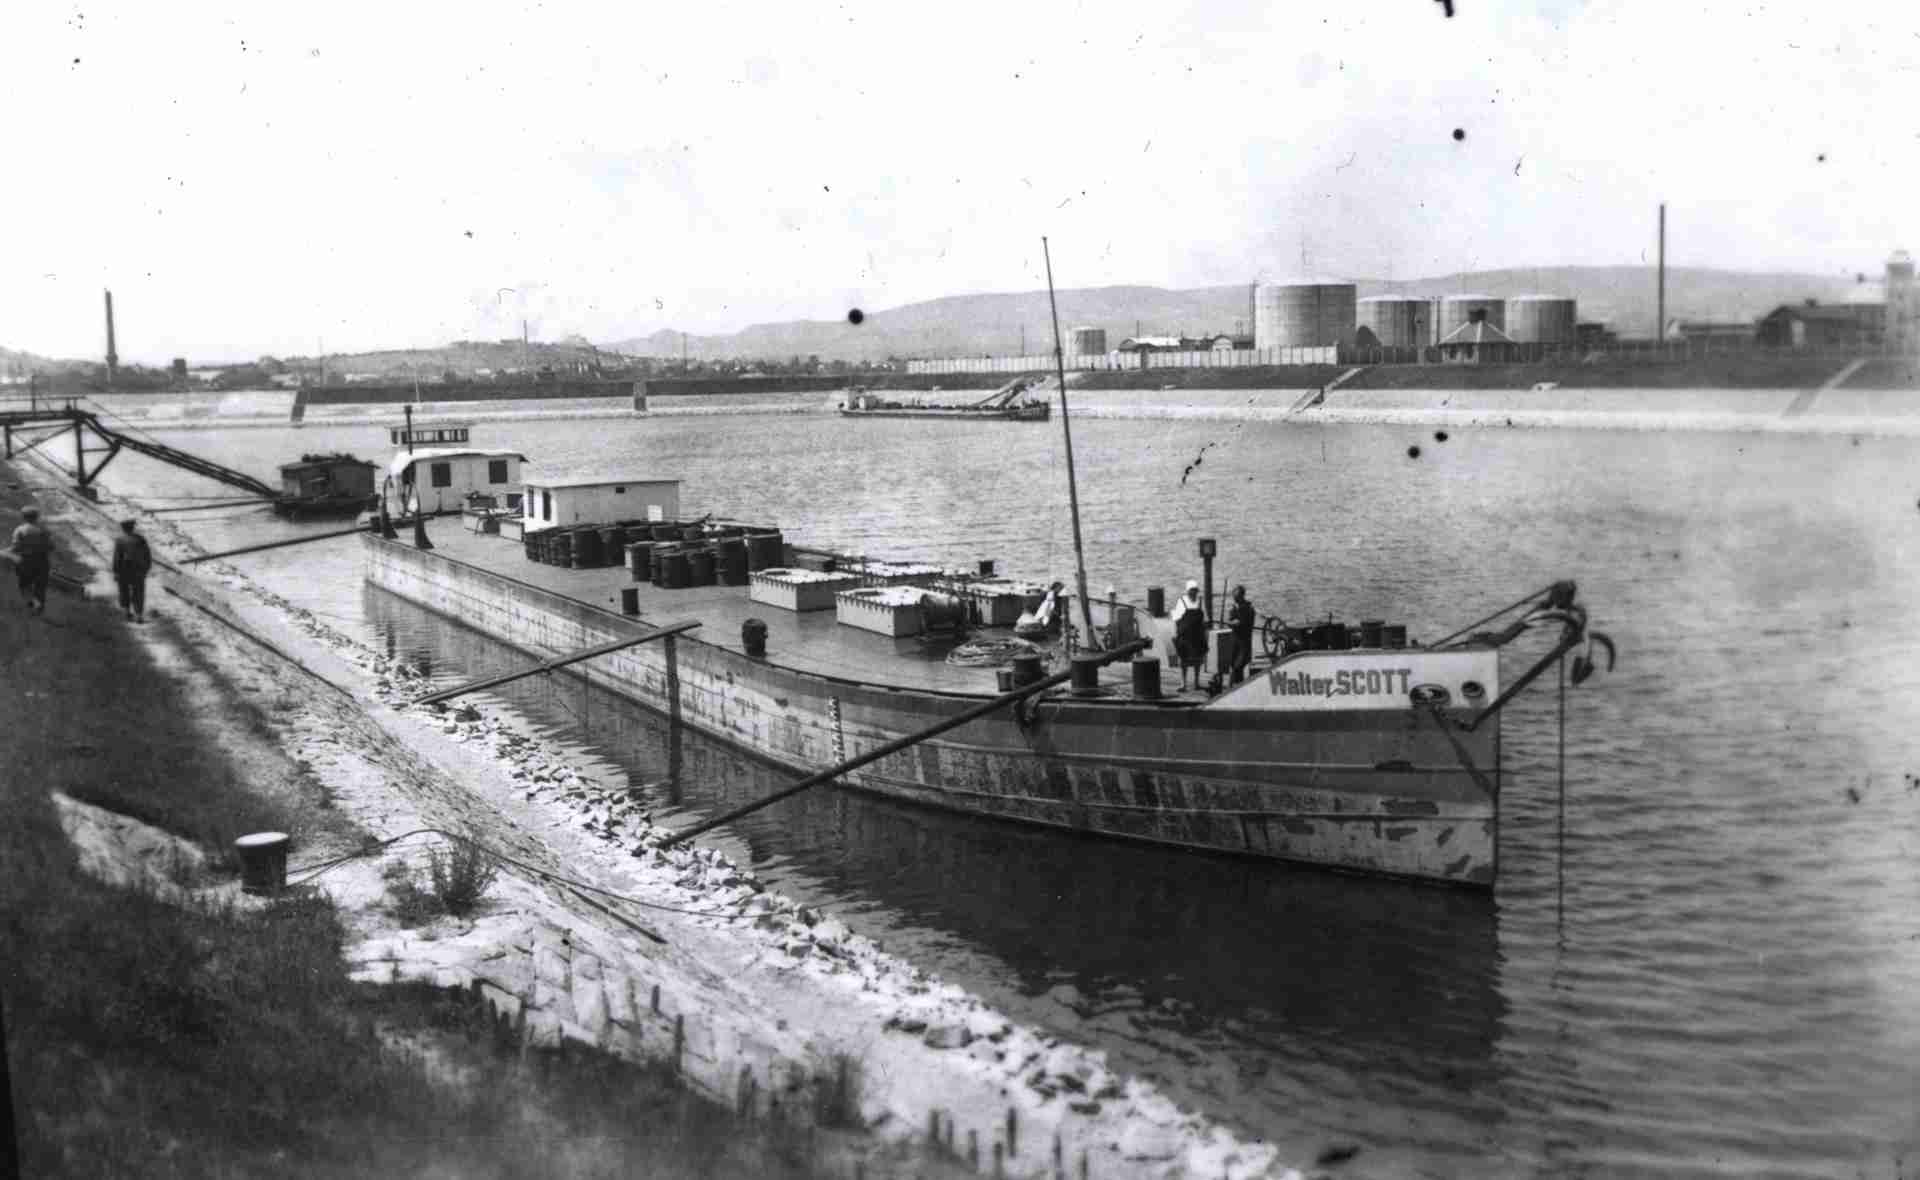 Csepeli petróleumkikötő 1938, Az ADT WALTER SCOTT nevű tankuszálya.